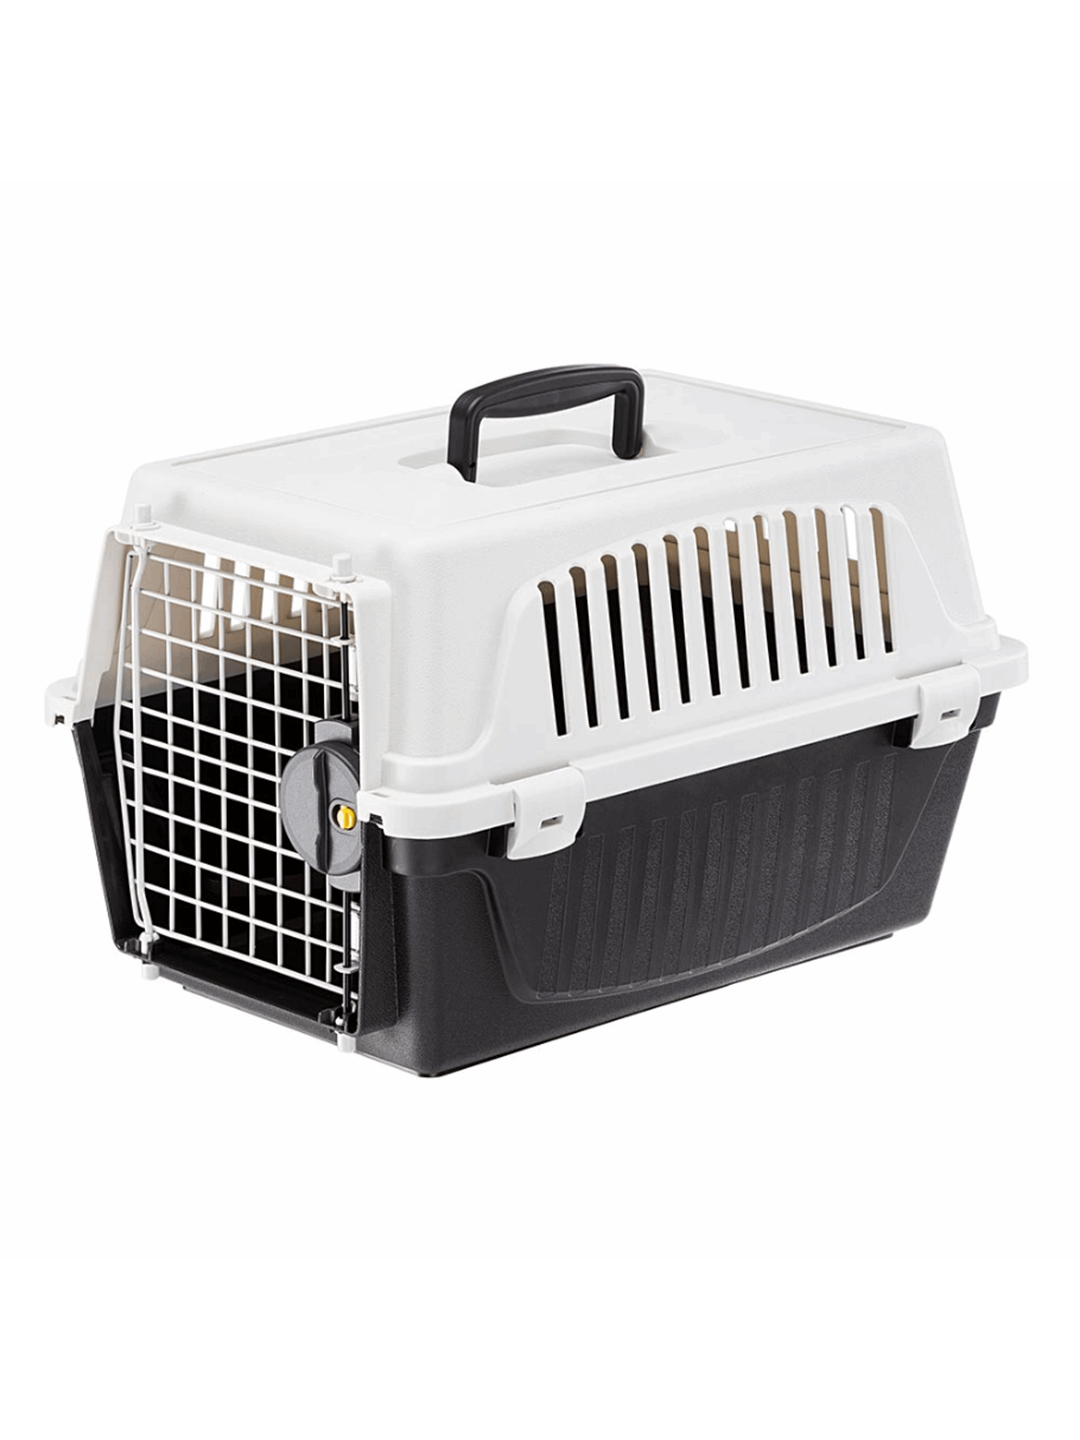 Κλουβιά Μεταφοράς –Ανταλλακτικά: Κλουβί Μεταφοράς Για Γάτες Και Μικρόσωμα  Σκυλιά Ferplast Atlas Professional - 10, Διαστάσεων: 32,5 X 48 X H 29 cm